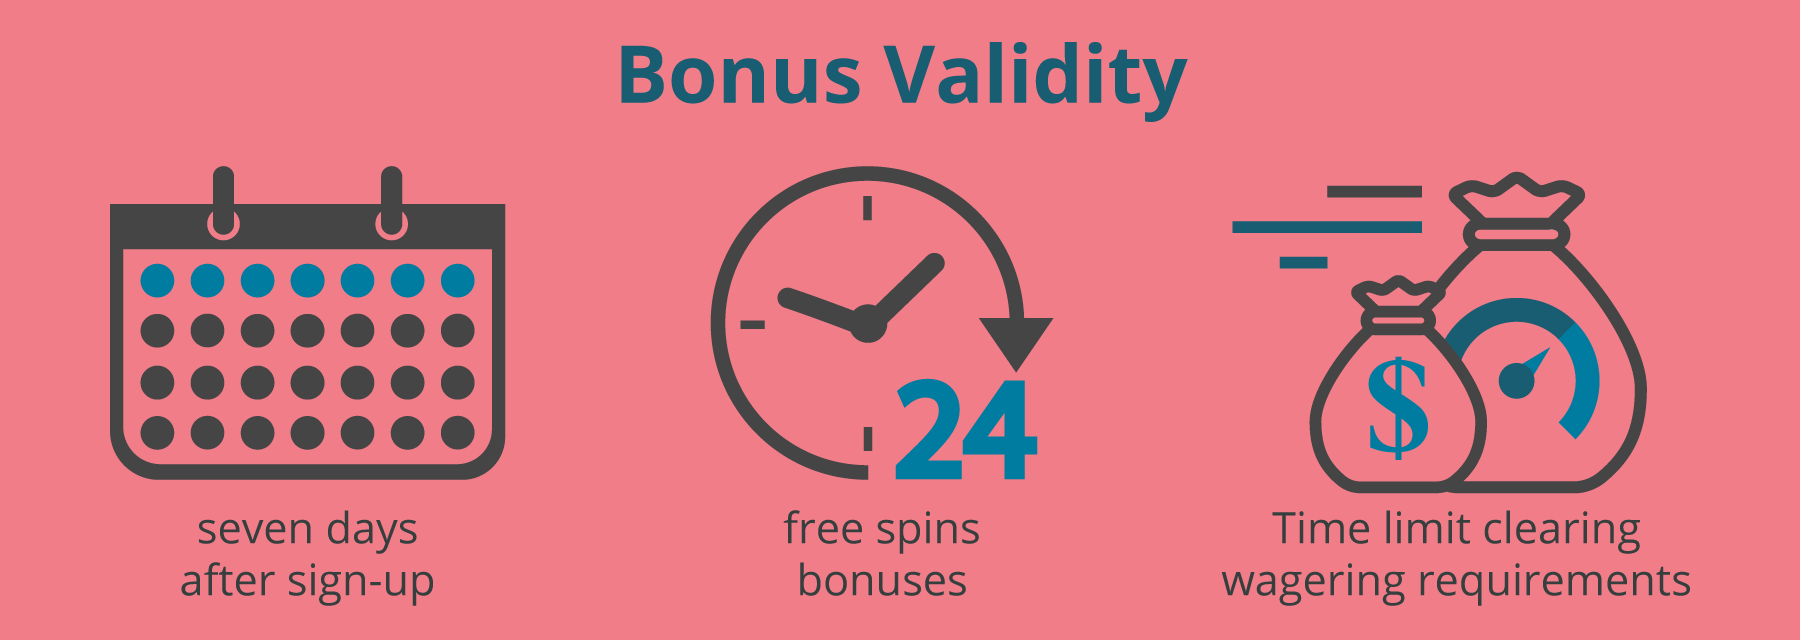 Casino Bonus Validity - Emirates Casino Online Casino Bonus Guide